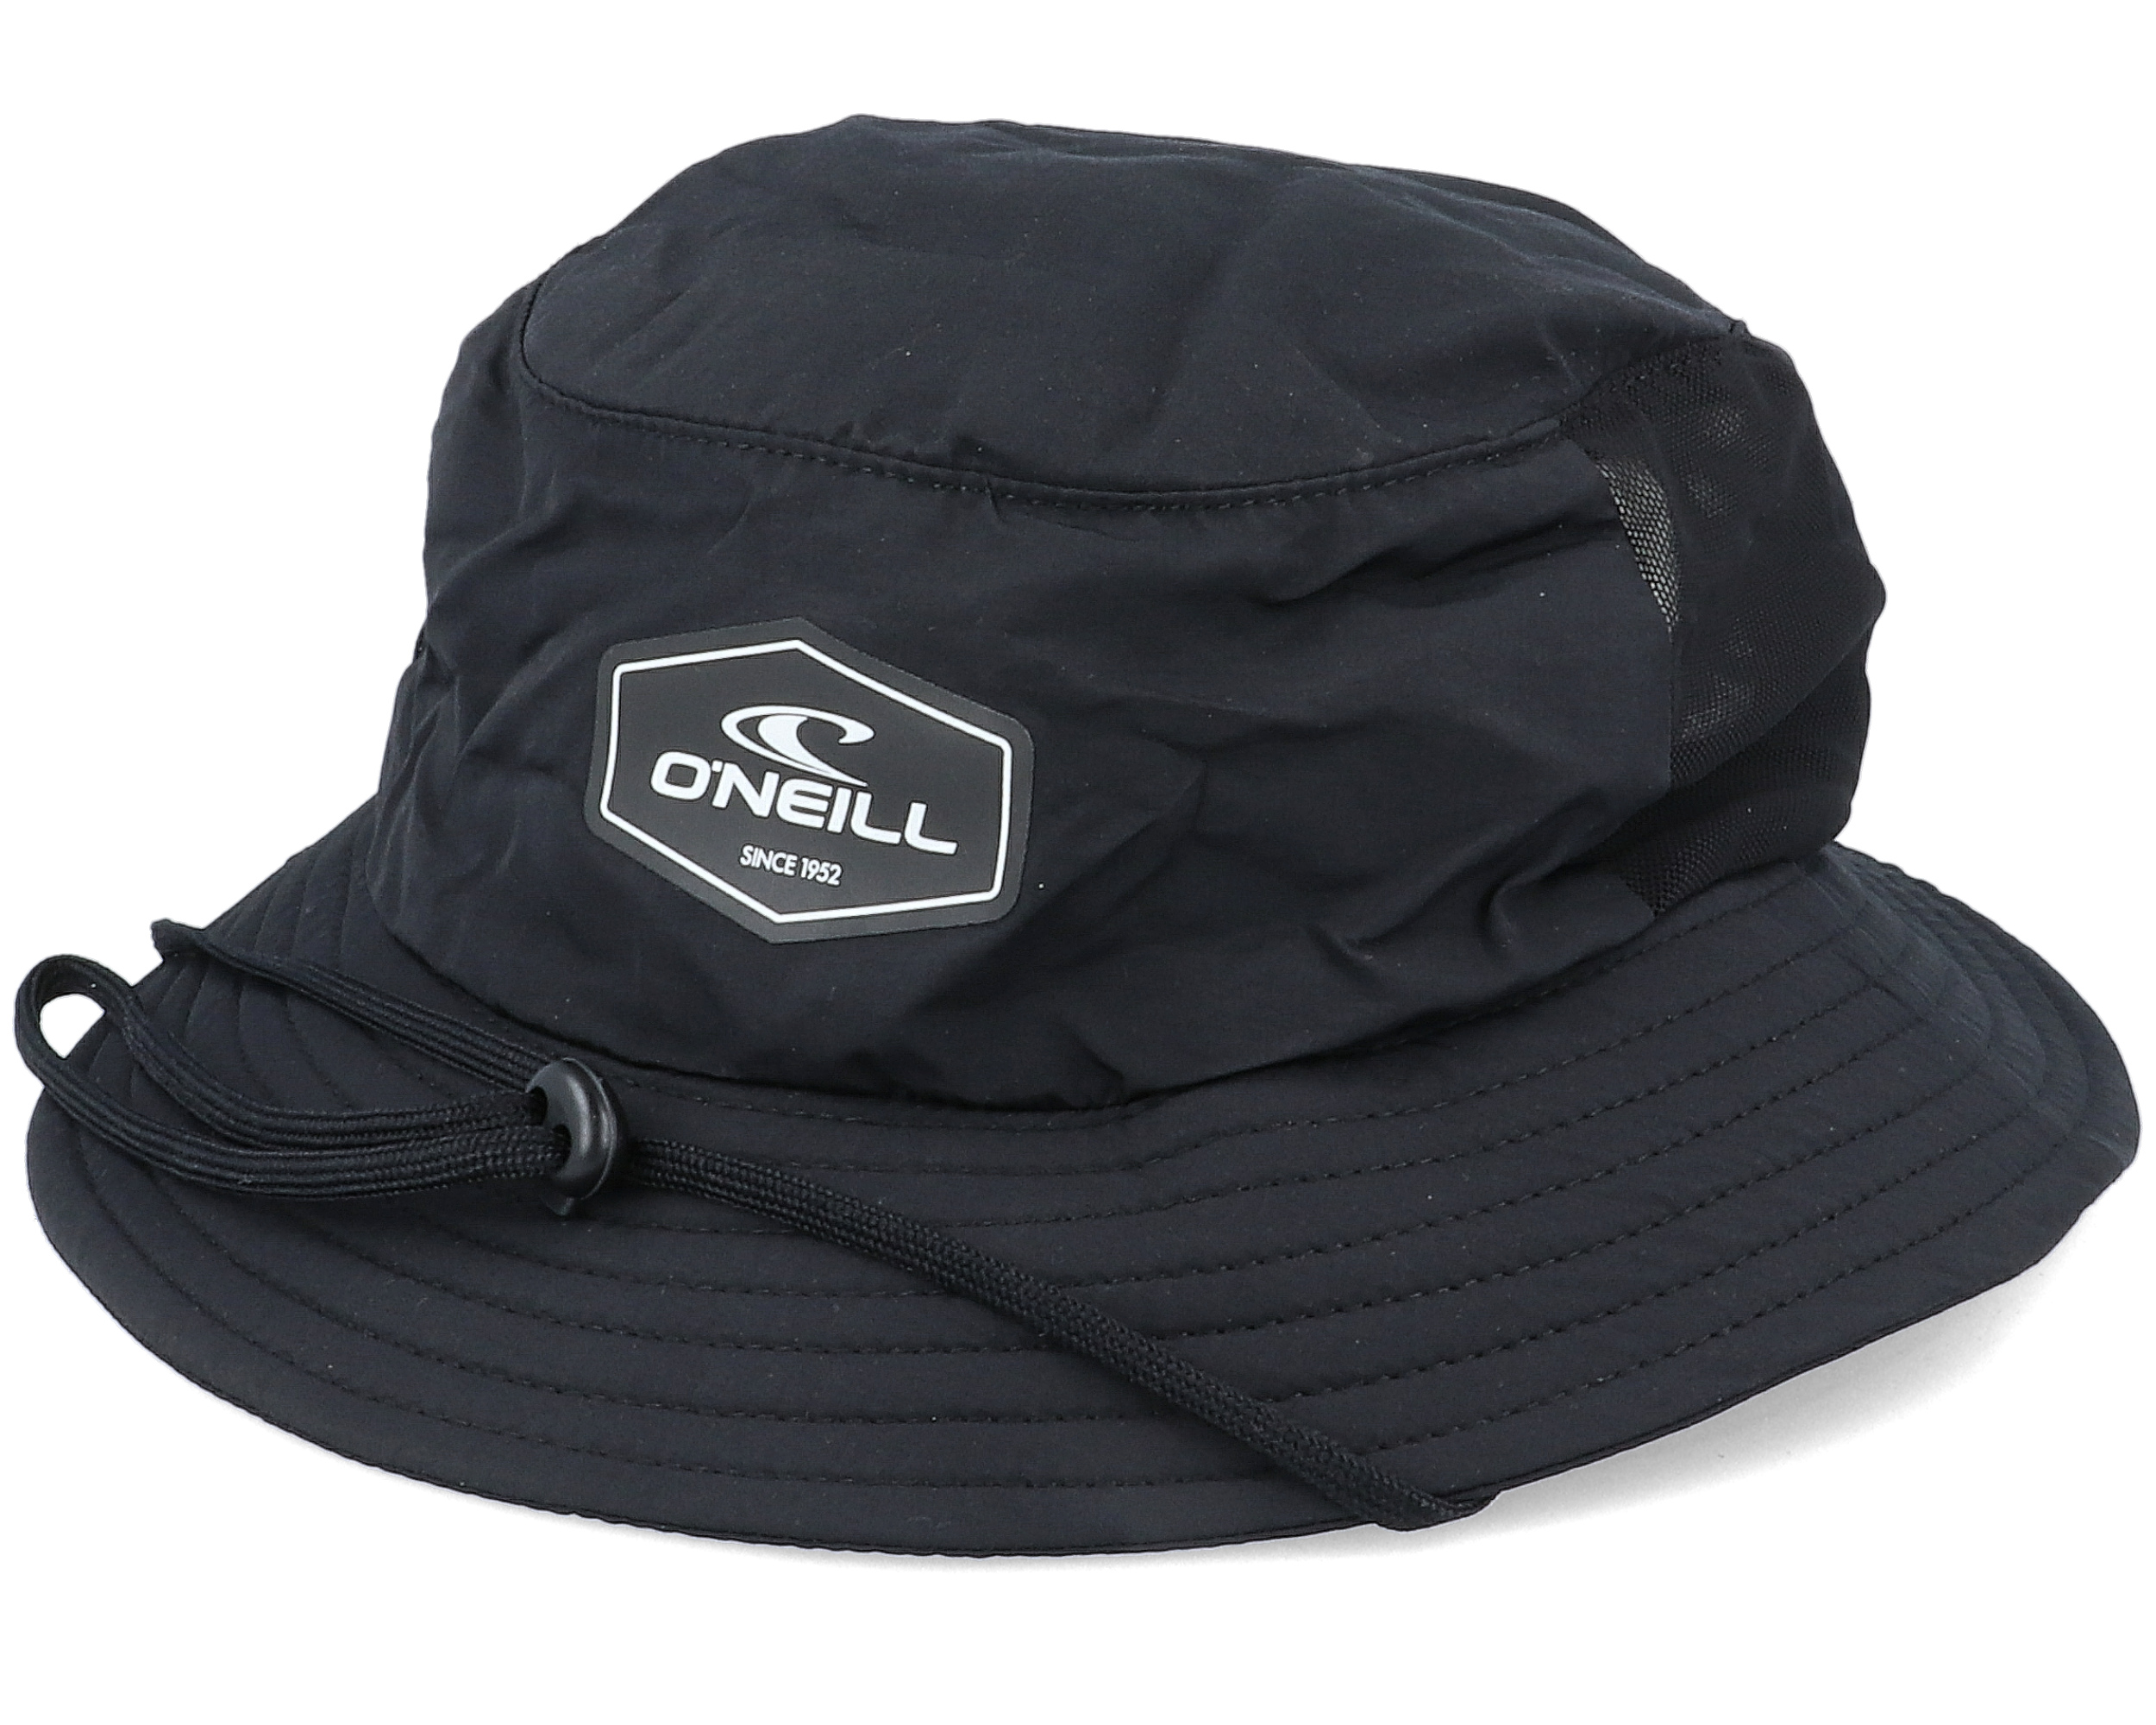 Bm Bucket Hat Black Out Bucket - O'Neill cap - Hatstore.de